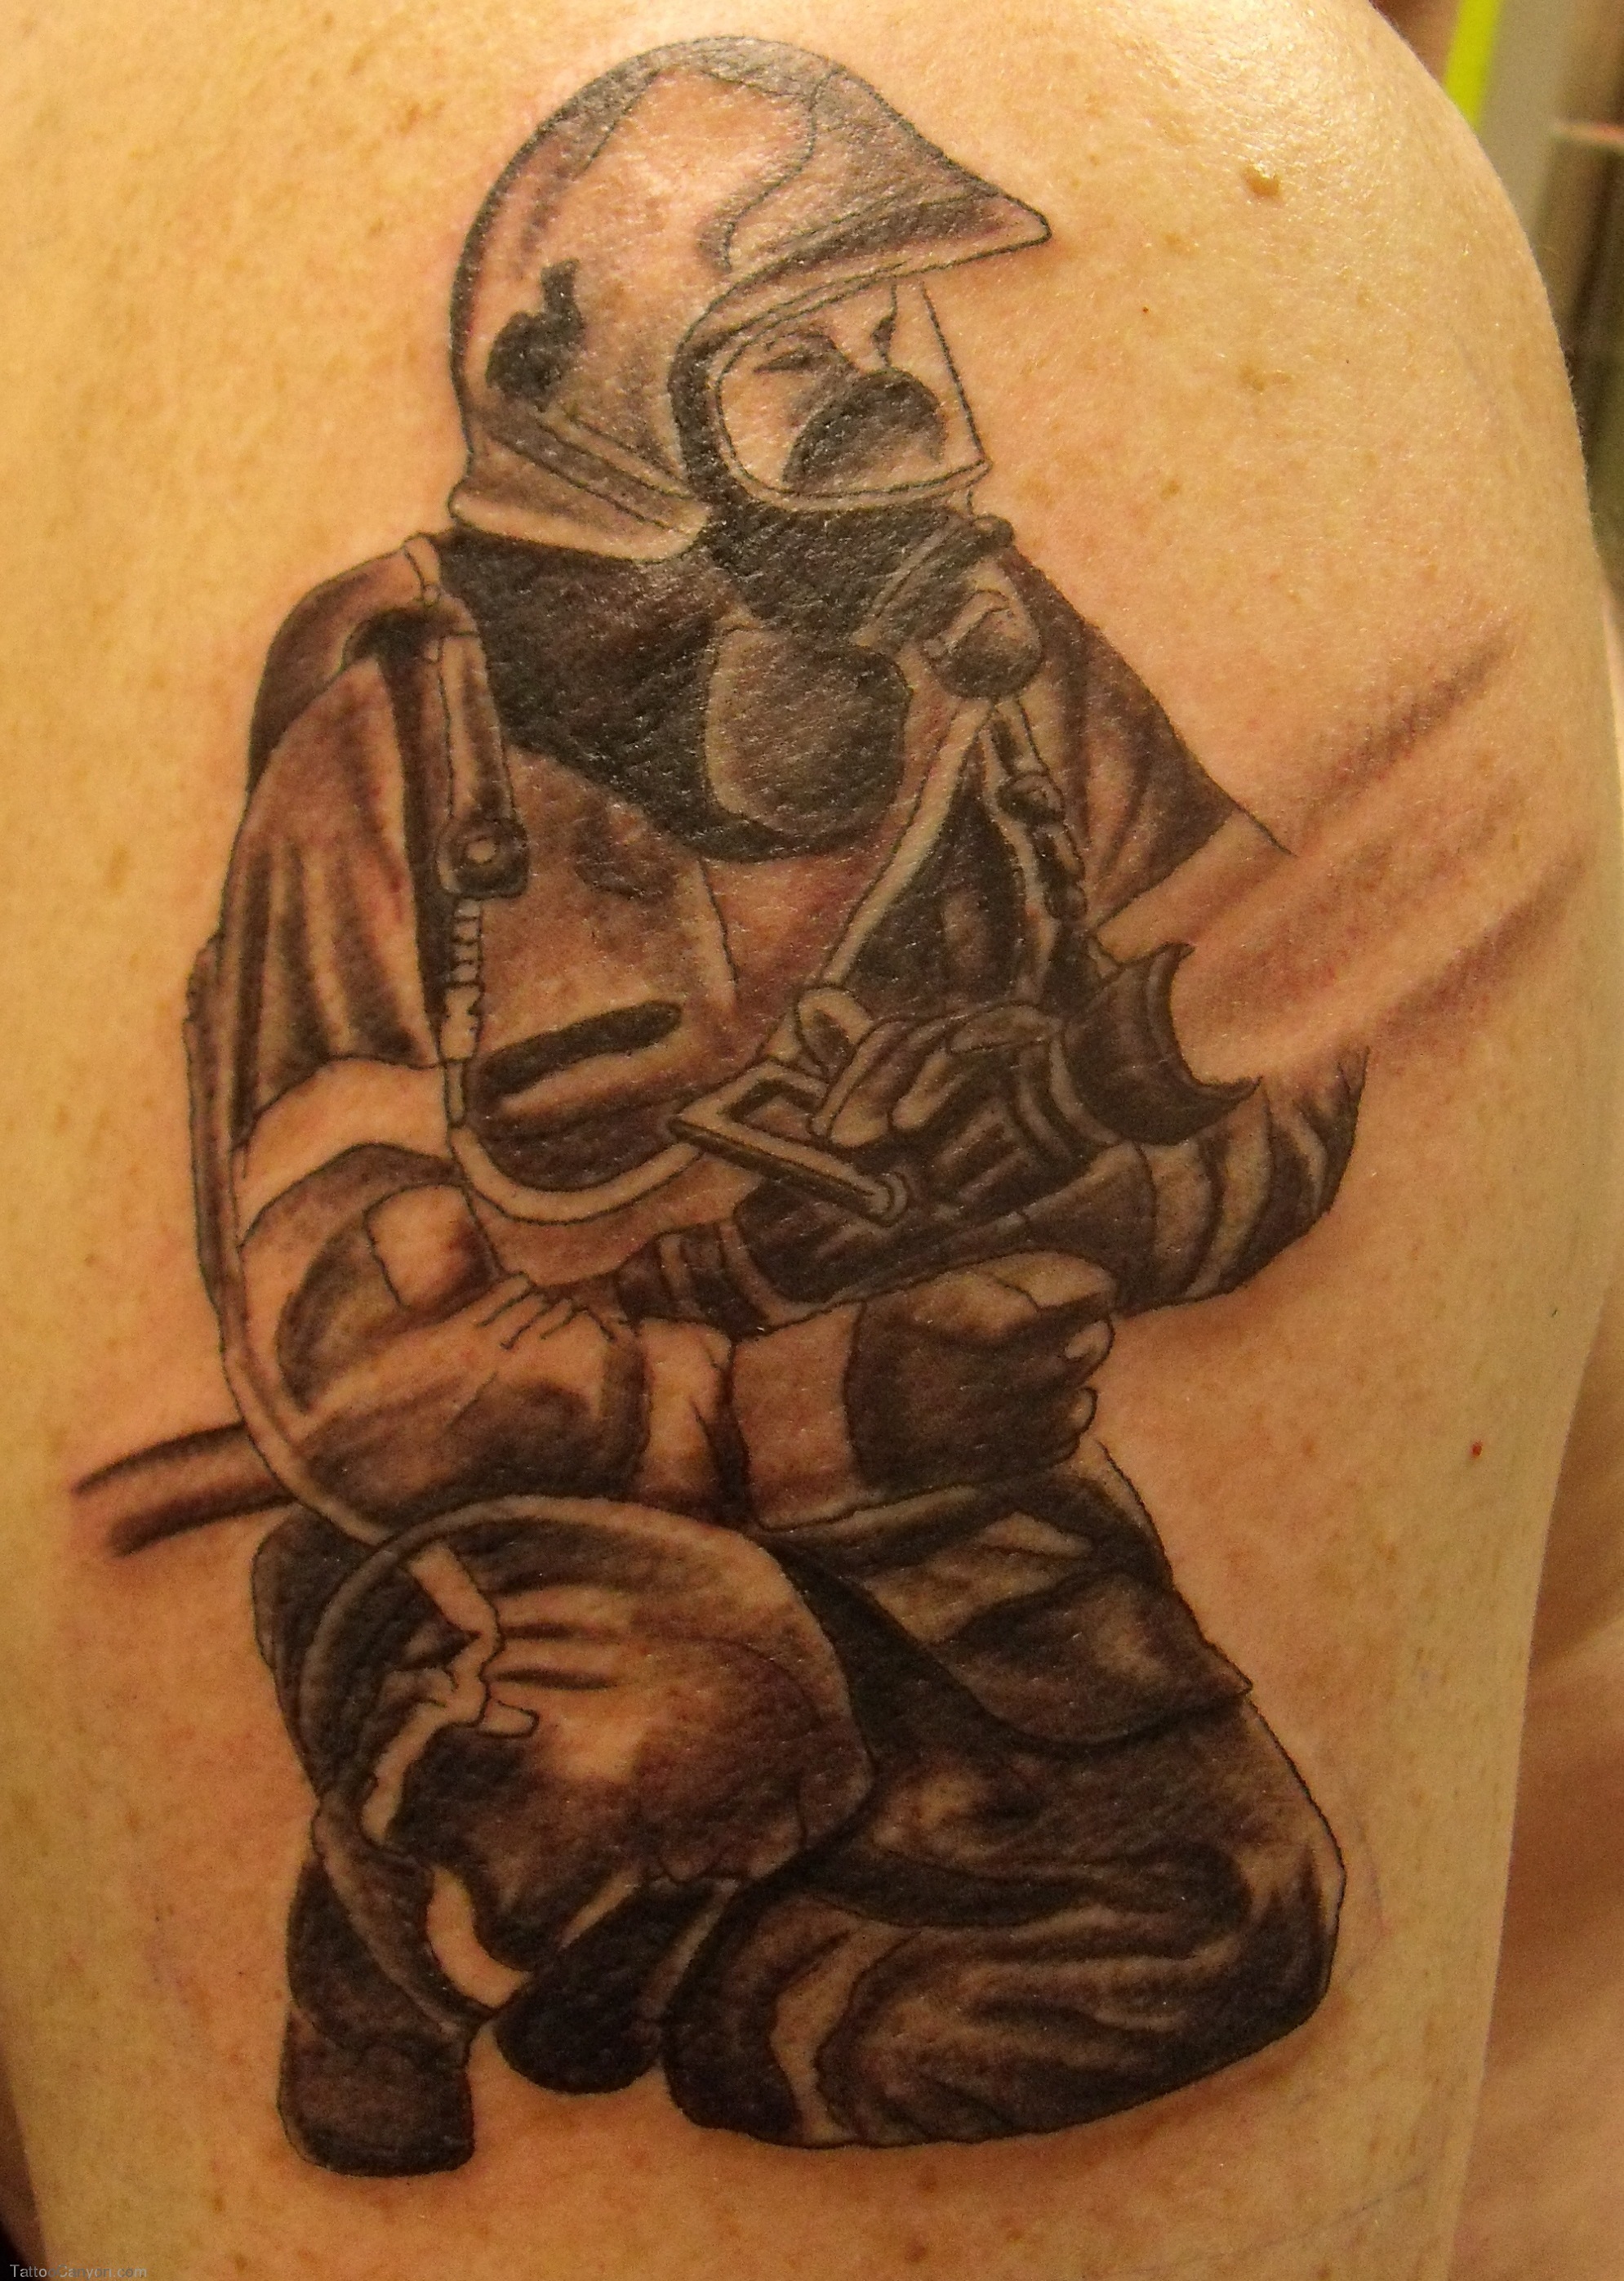 Black And Grey Firefighter Tattoo Design For Shoulder